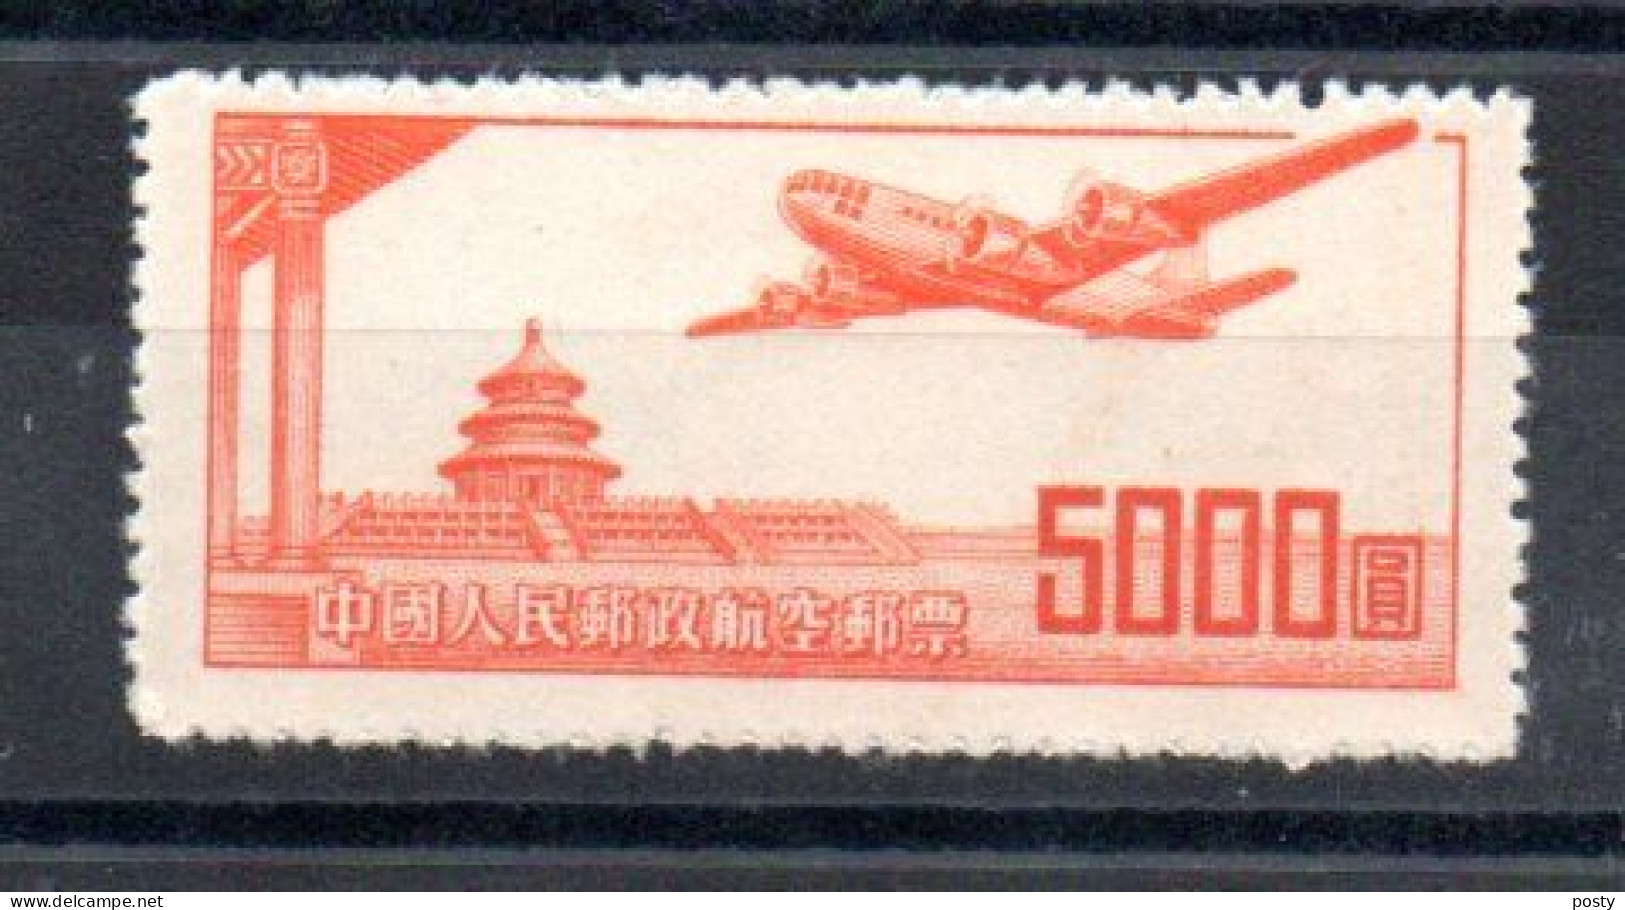 CHINE - CHINA - 1951 - POSTE AERIENNE - AIRMAIL - AVION - AIRCRAFT - TEMPLE DU CIEL - TEMPLE OF HEAVEN - 5000 - - Poste Aérienne